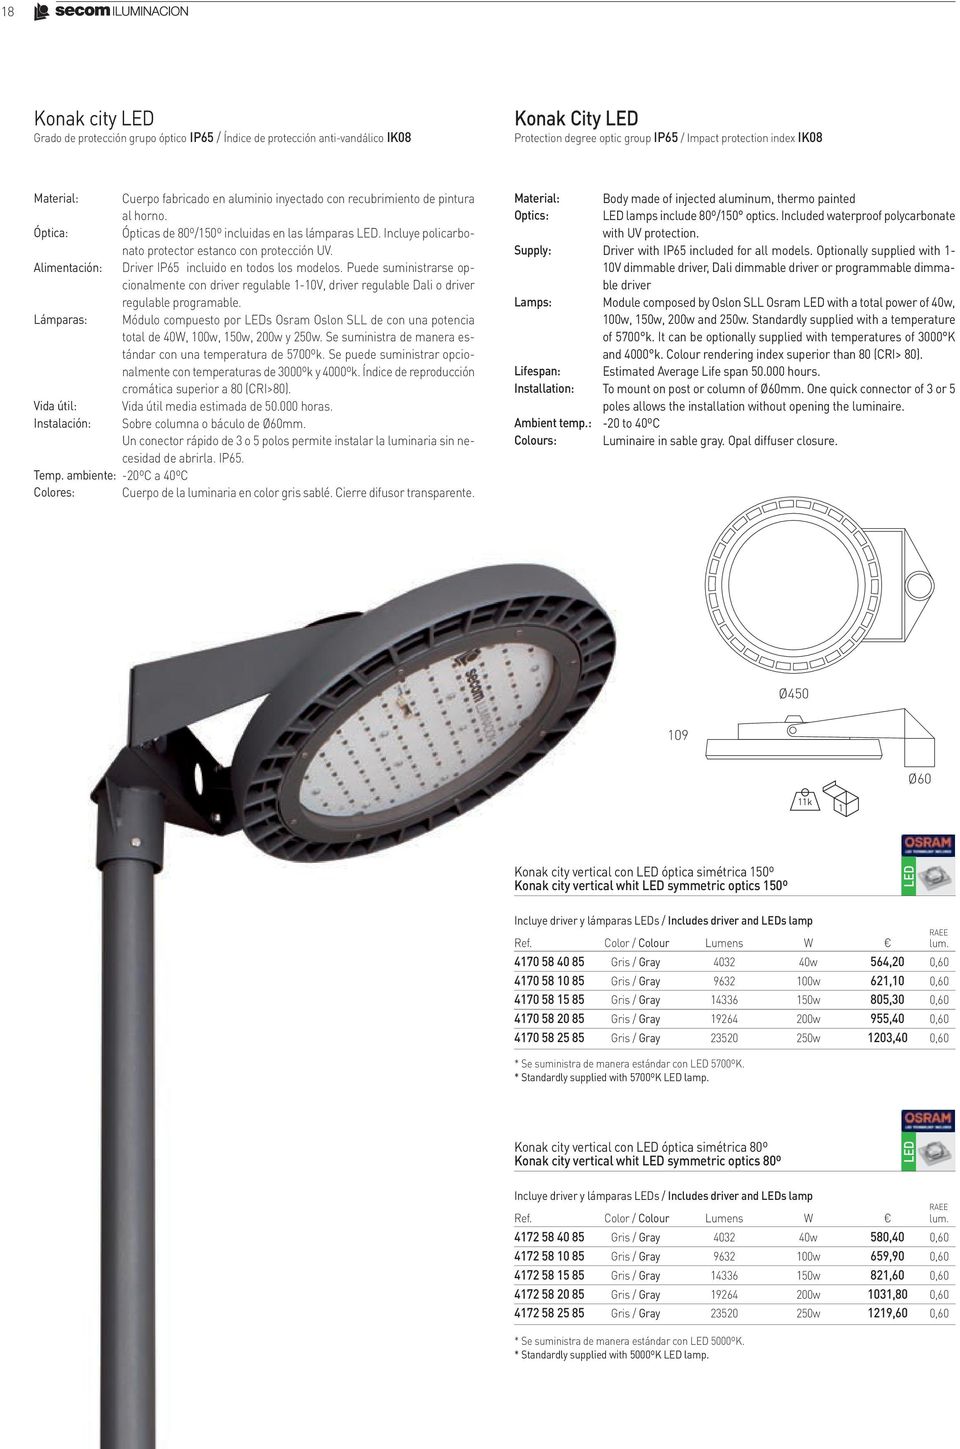 Ópticas de 80º/150º incluidas en las lámparas LED. Incluye policarbonato protector estanco con protección UV. Driver IP65 incluido en todos los modelos.